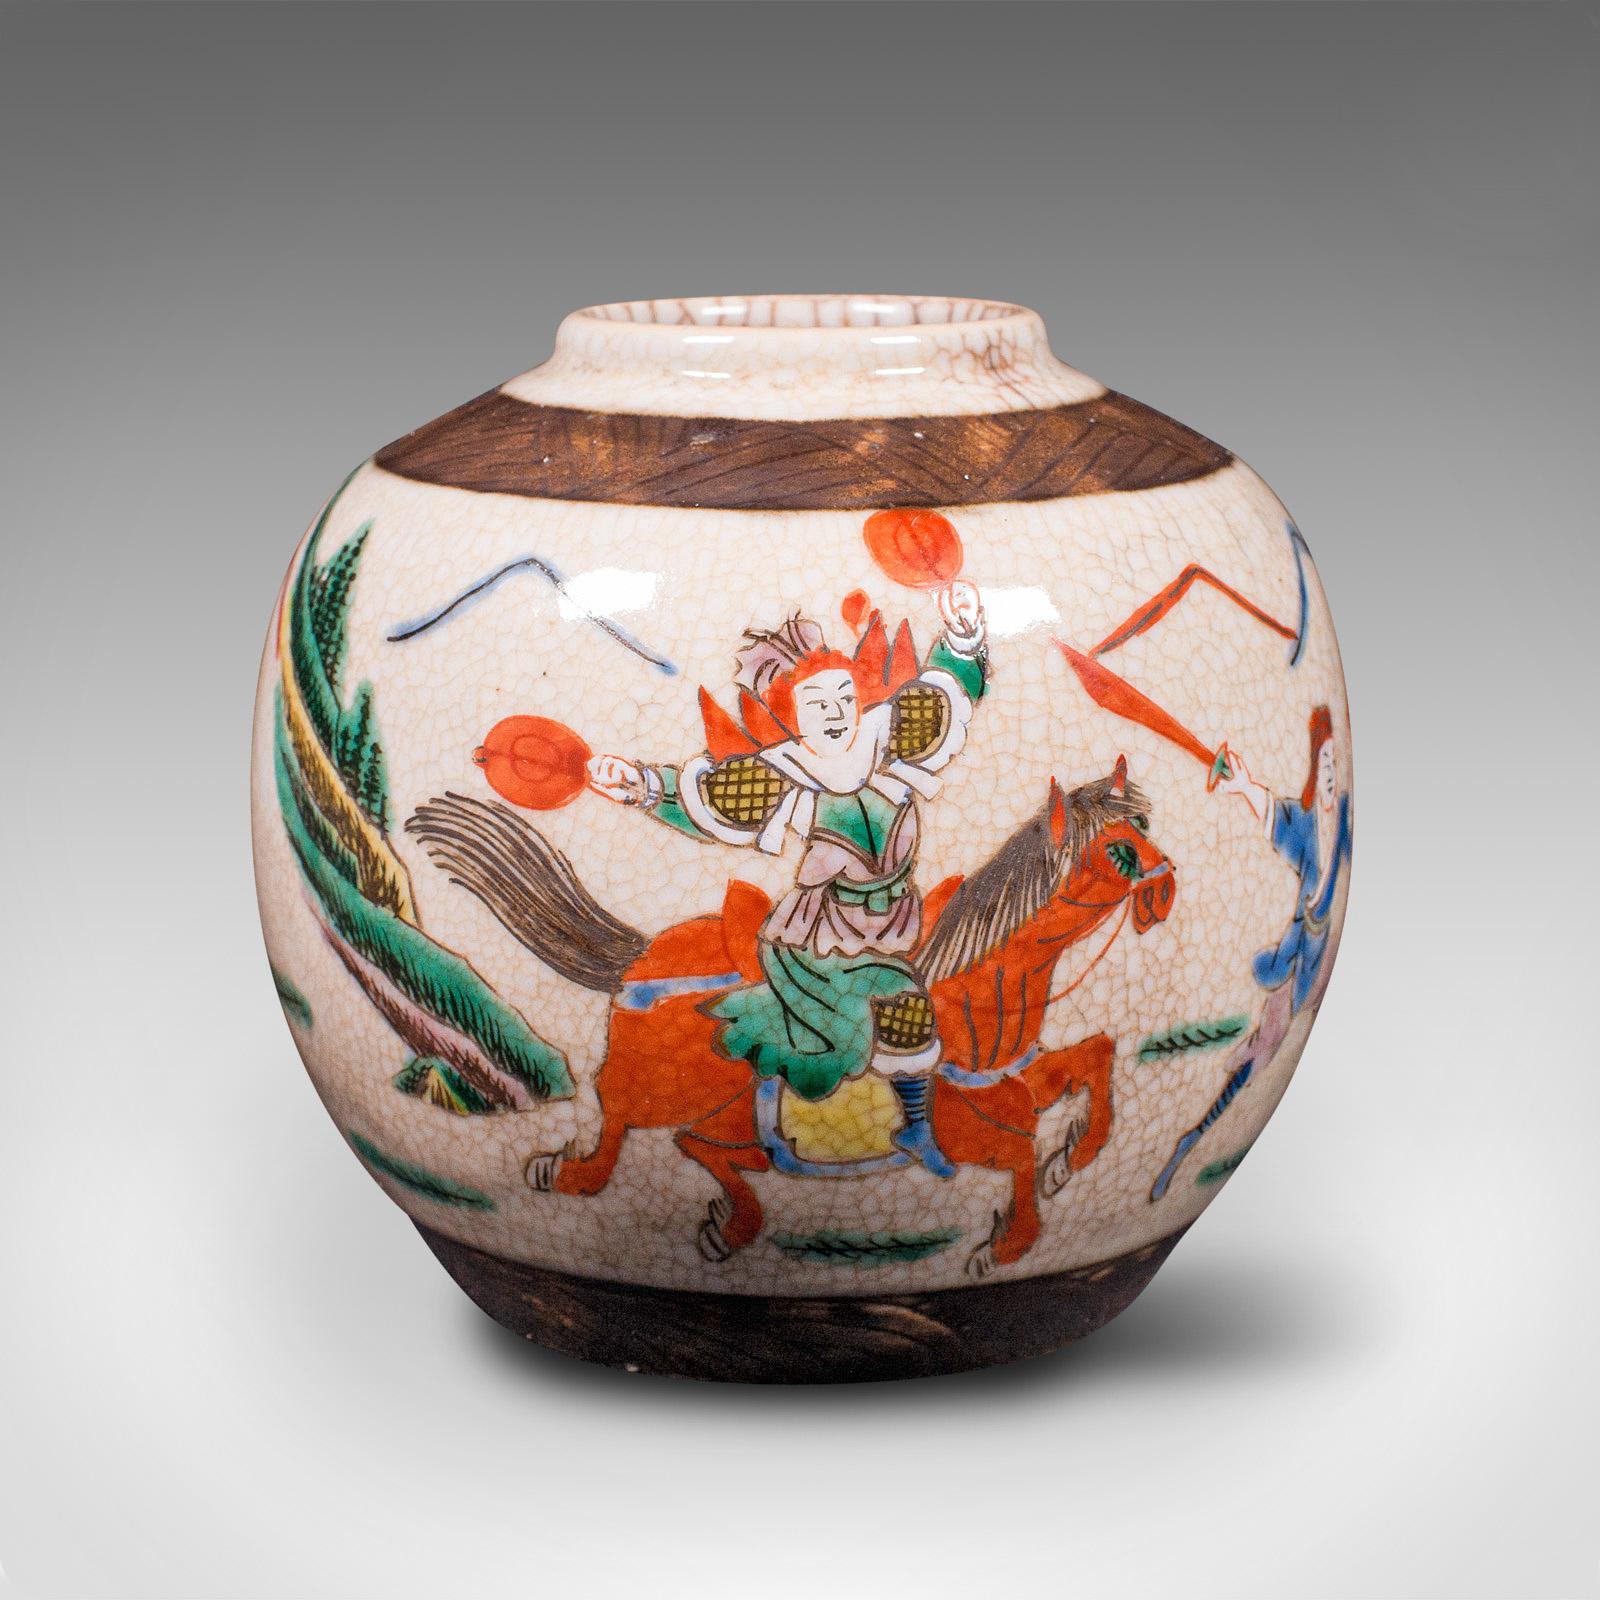 Il s'agit d'un petit vase à fleurs antique. Une urne japonaise en céramique, datant de la période Edo, vers 1850.

Le goût antique japonais fort présente un attrait distinctif
Affiche une patine vieillie désirable et en bon état